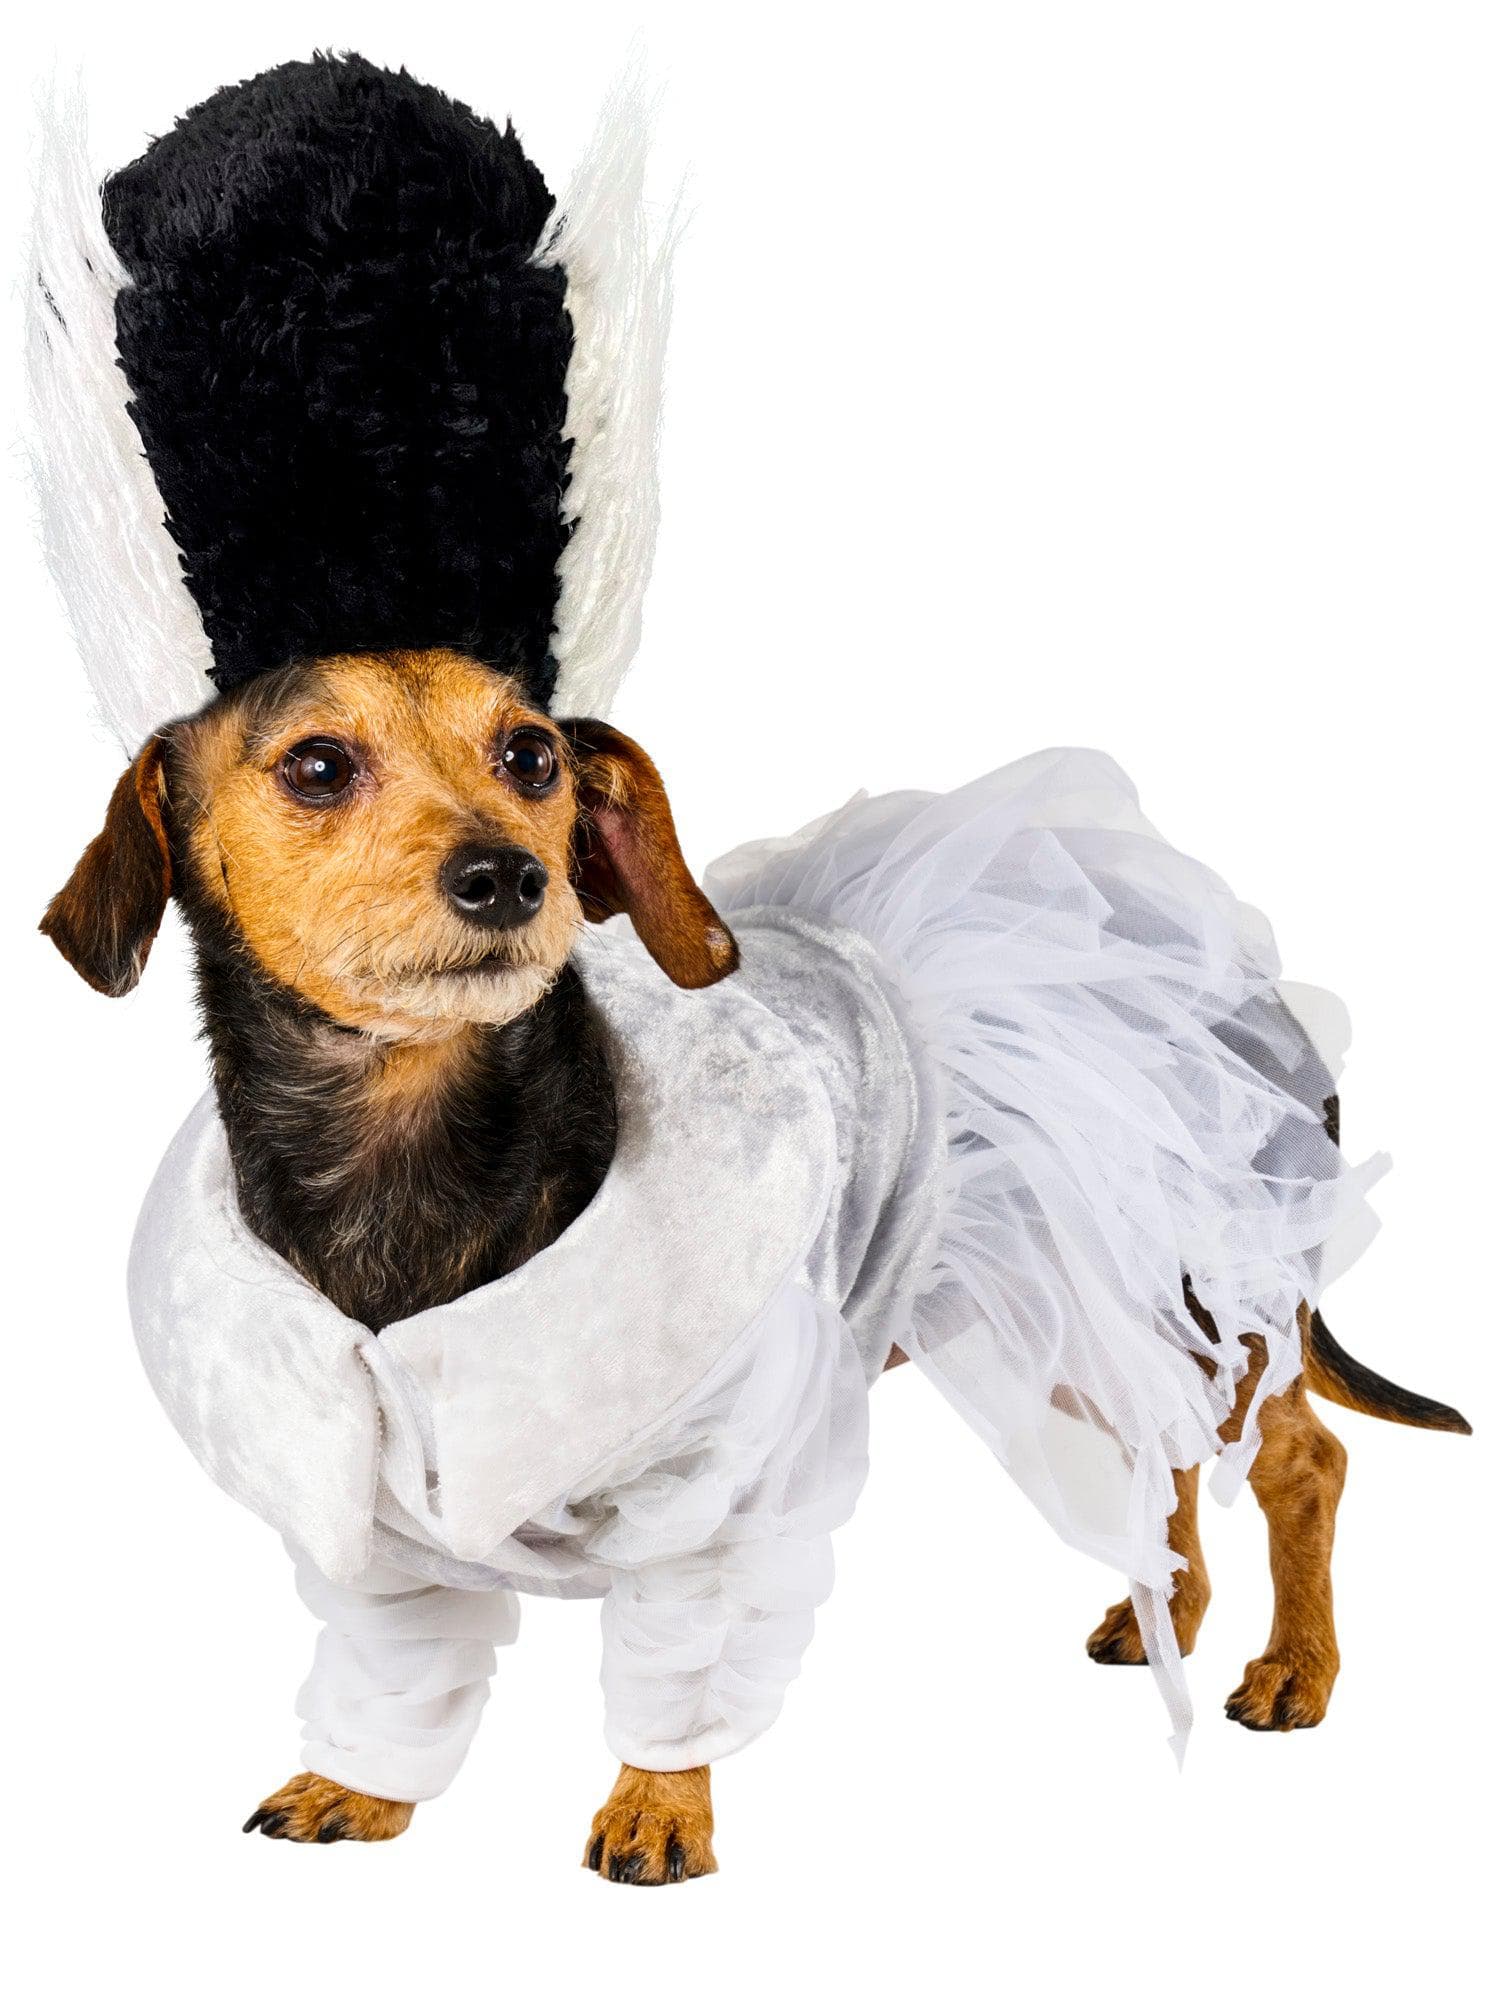 The Bride of Frankenstein Pet Costume - costumes.com